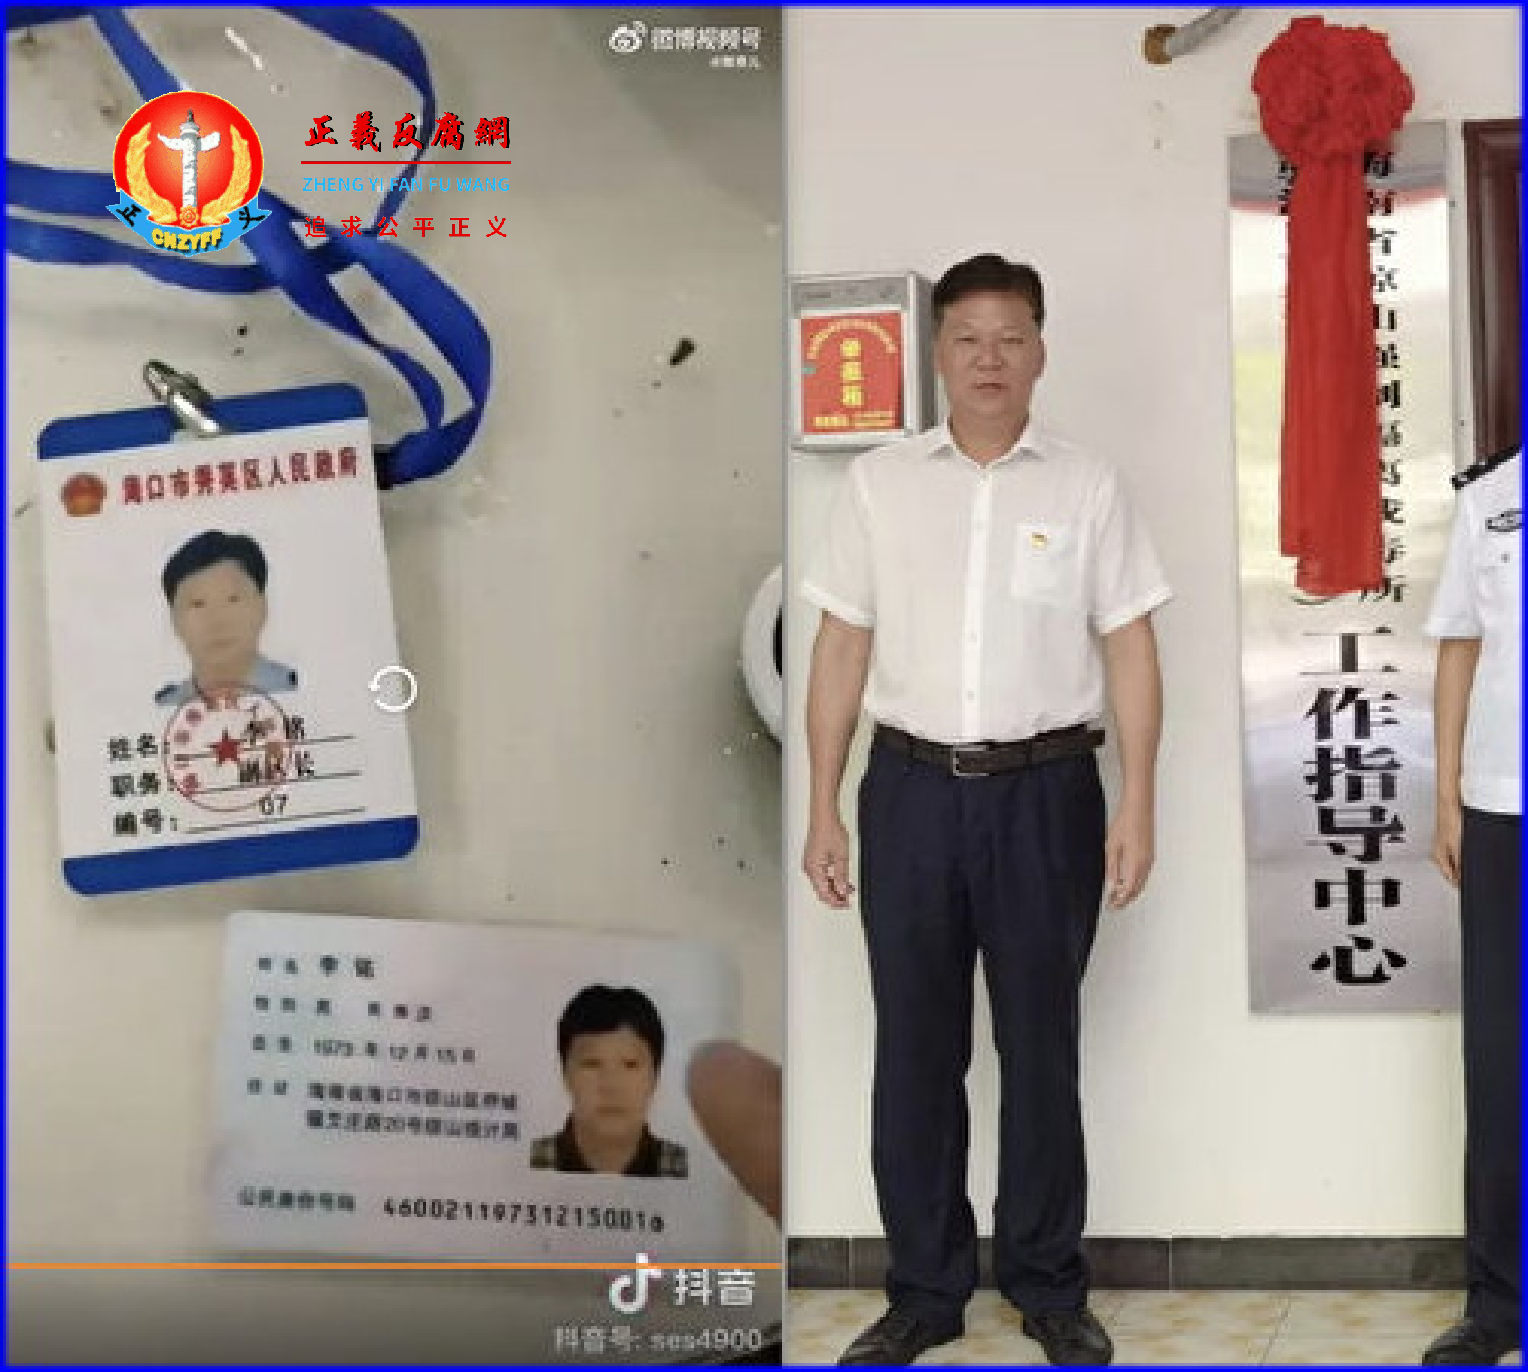 海南省海口市秀英区副区长李铭被当场抓奸搜出的身份证和显示工作身份胸卡。.png